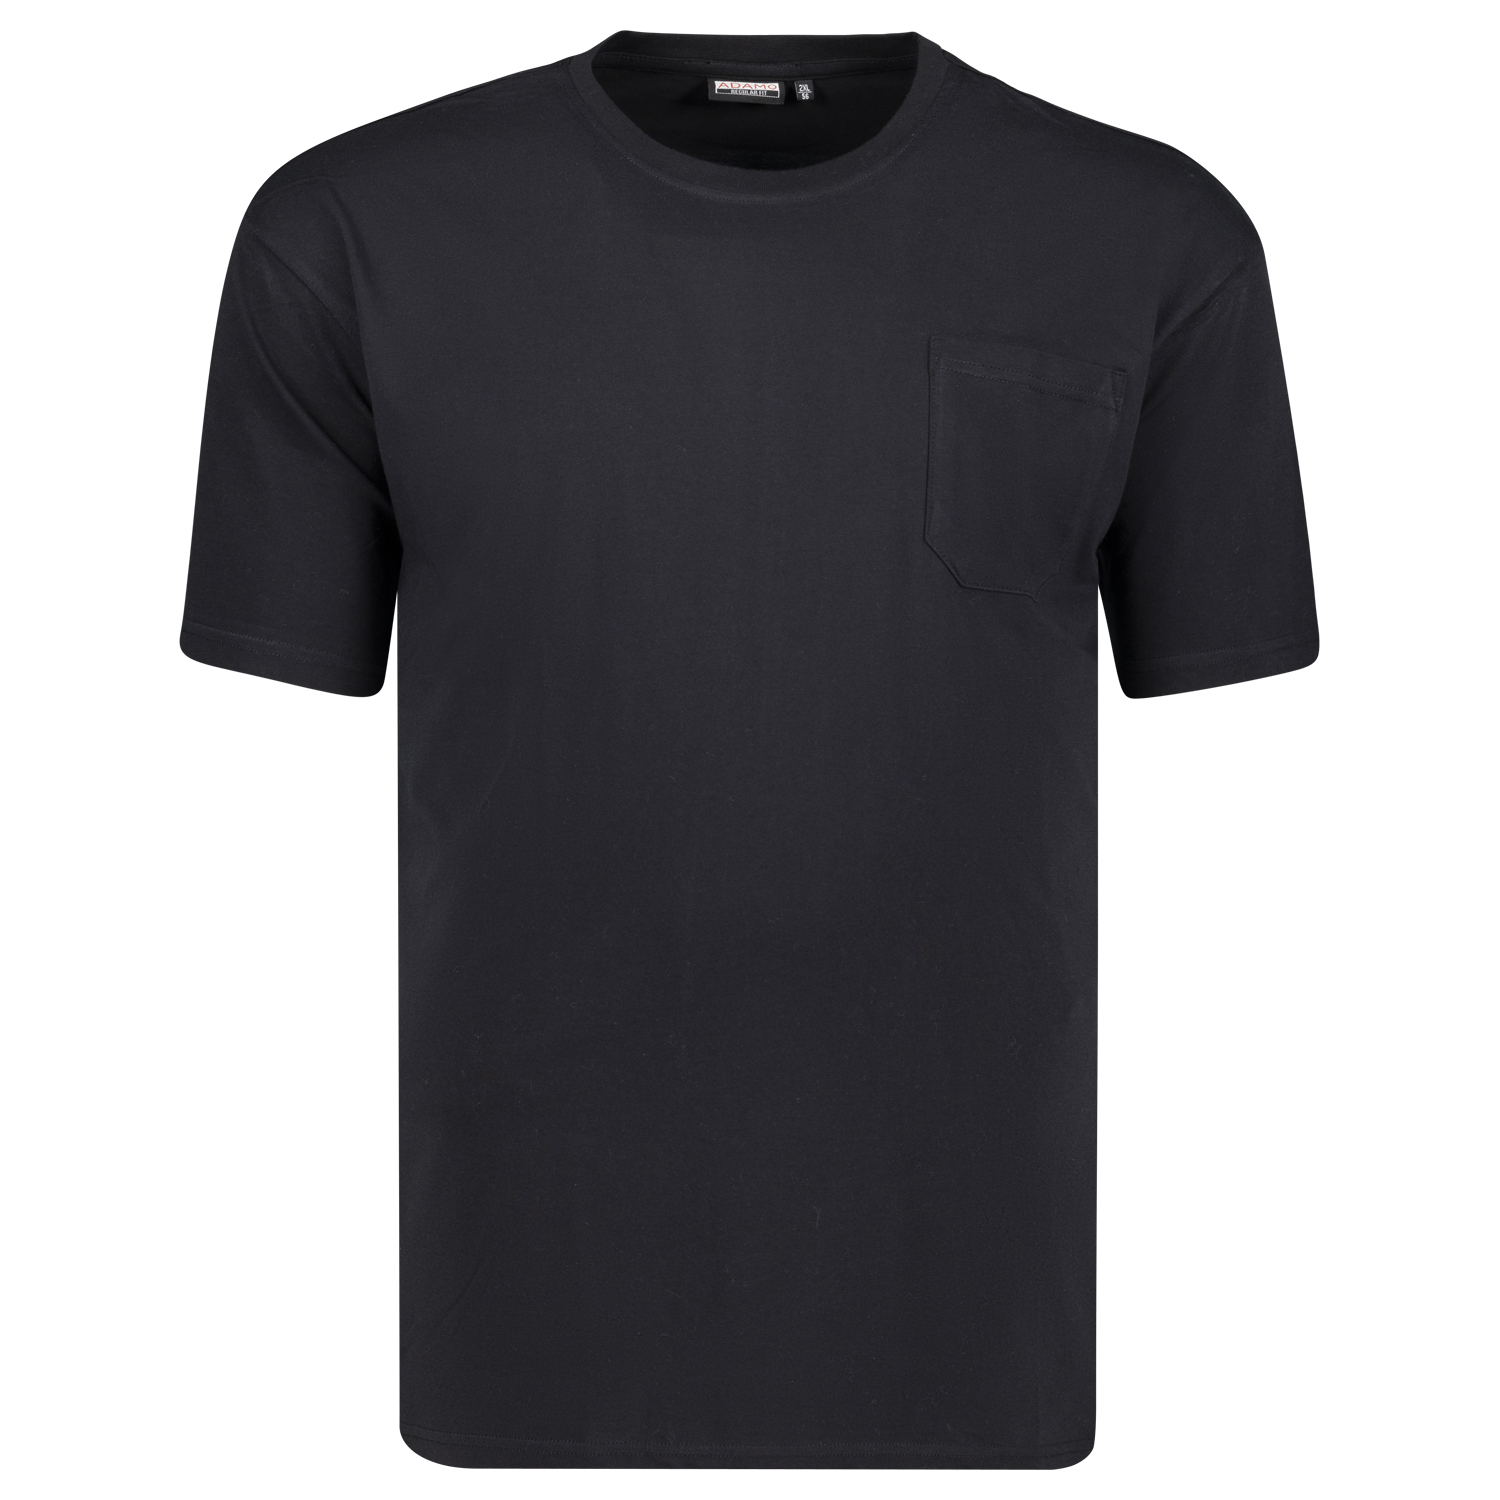 T-shirts série KODY by ADAMO jusqu'à la grande taille 10XL - couleur: noir